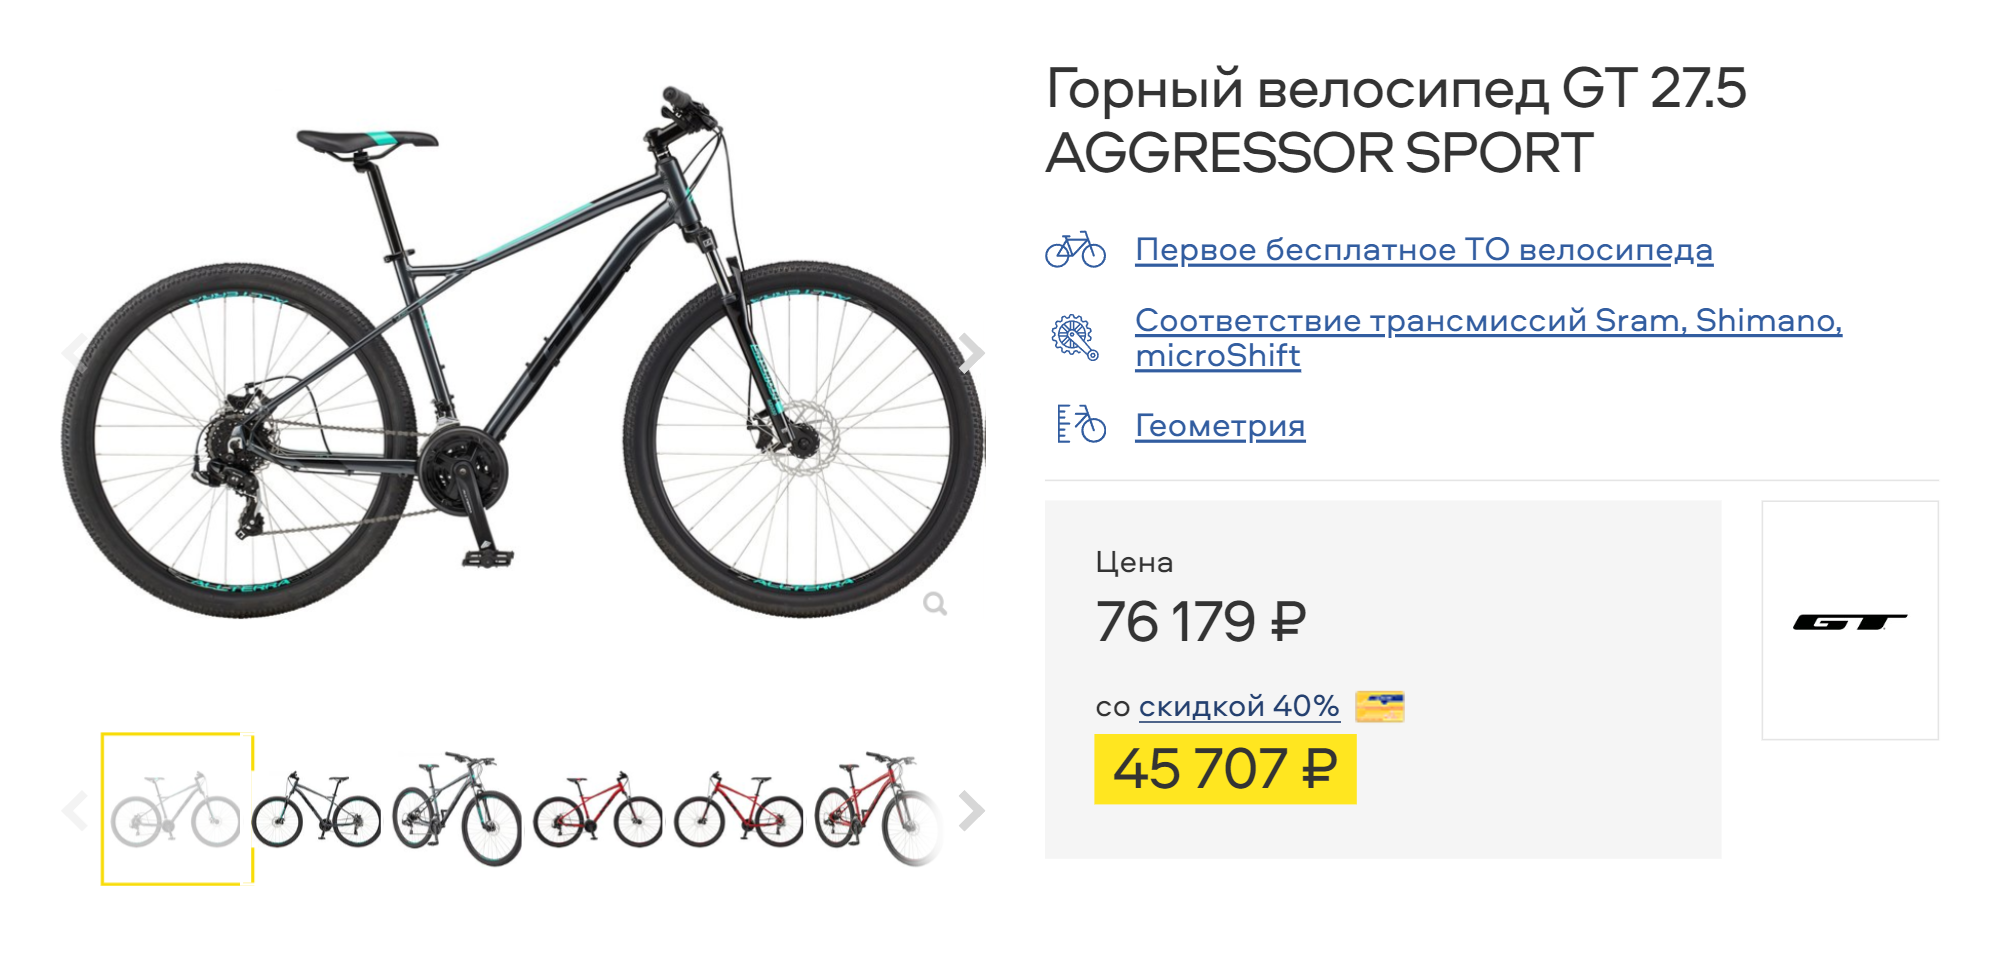 Сейчас GT Aggressor поменял дизайн и комплектацию. Этот велосипед переключается быстрее и легче, чем предшественник. Источник: trial⁠-⁠sport.ru